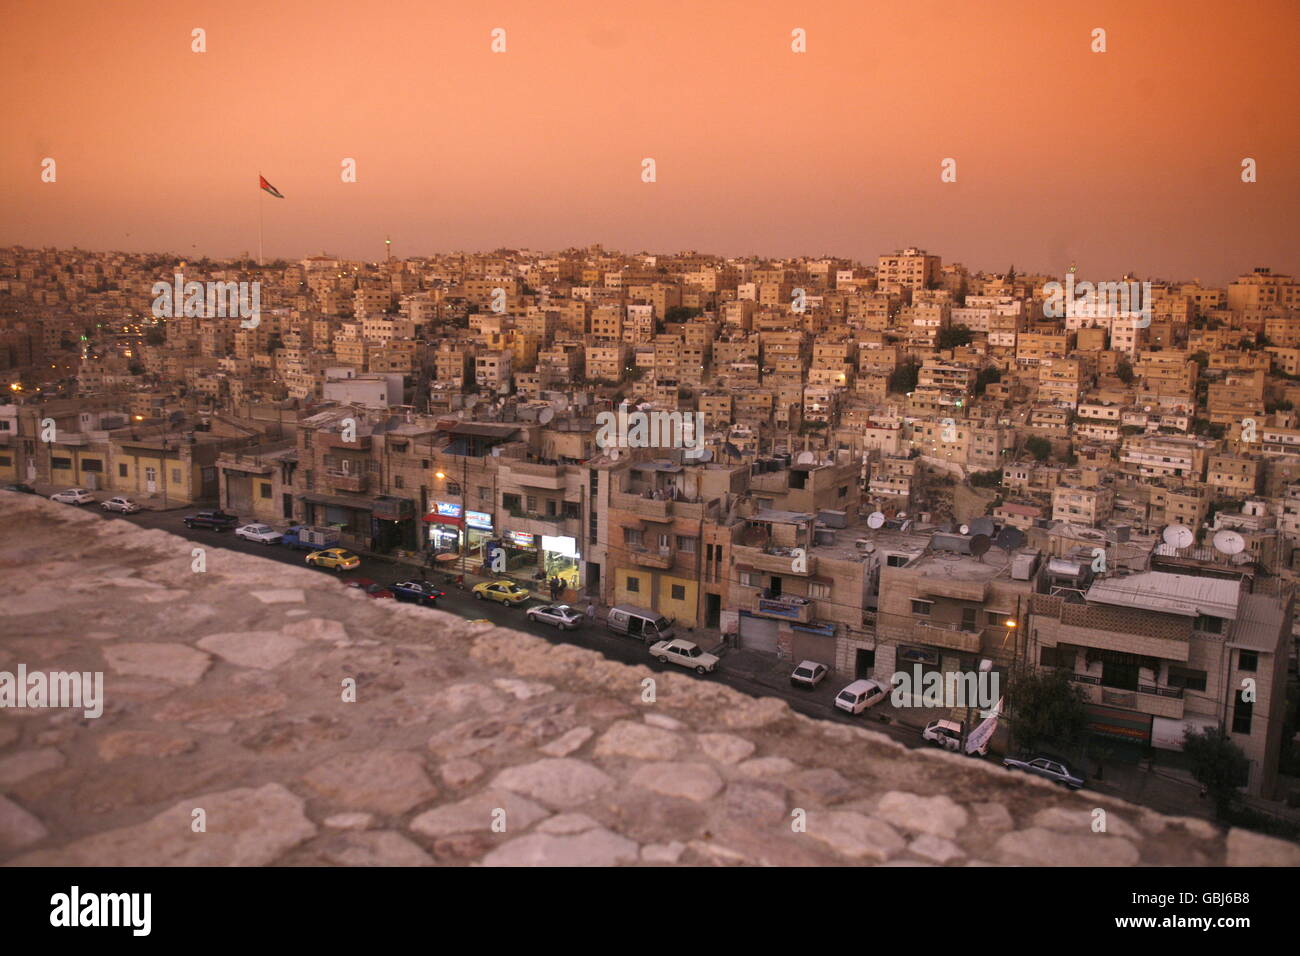 Das Stadtzentrum von der Stadt Amman in Jordanien im Nahen Osten. Stockfoto